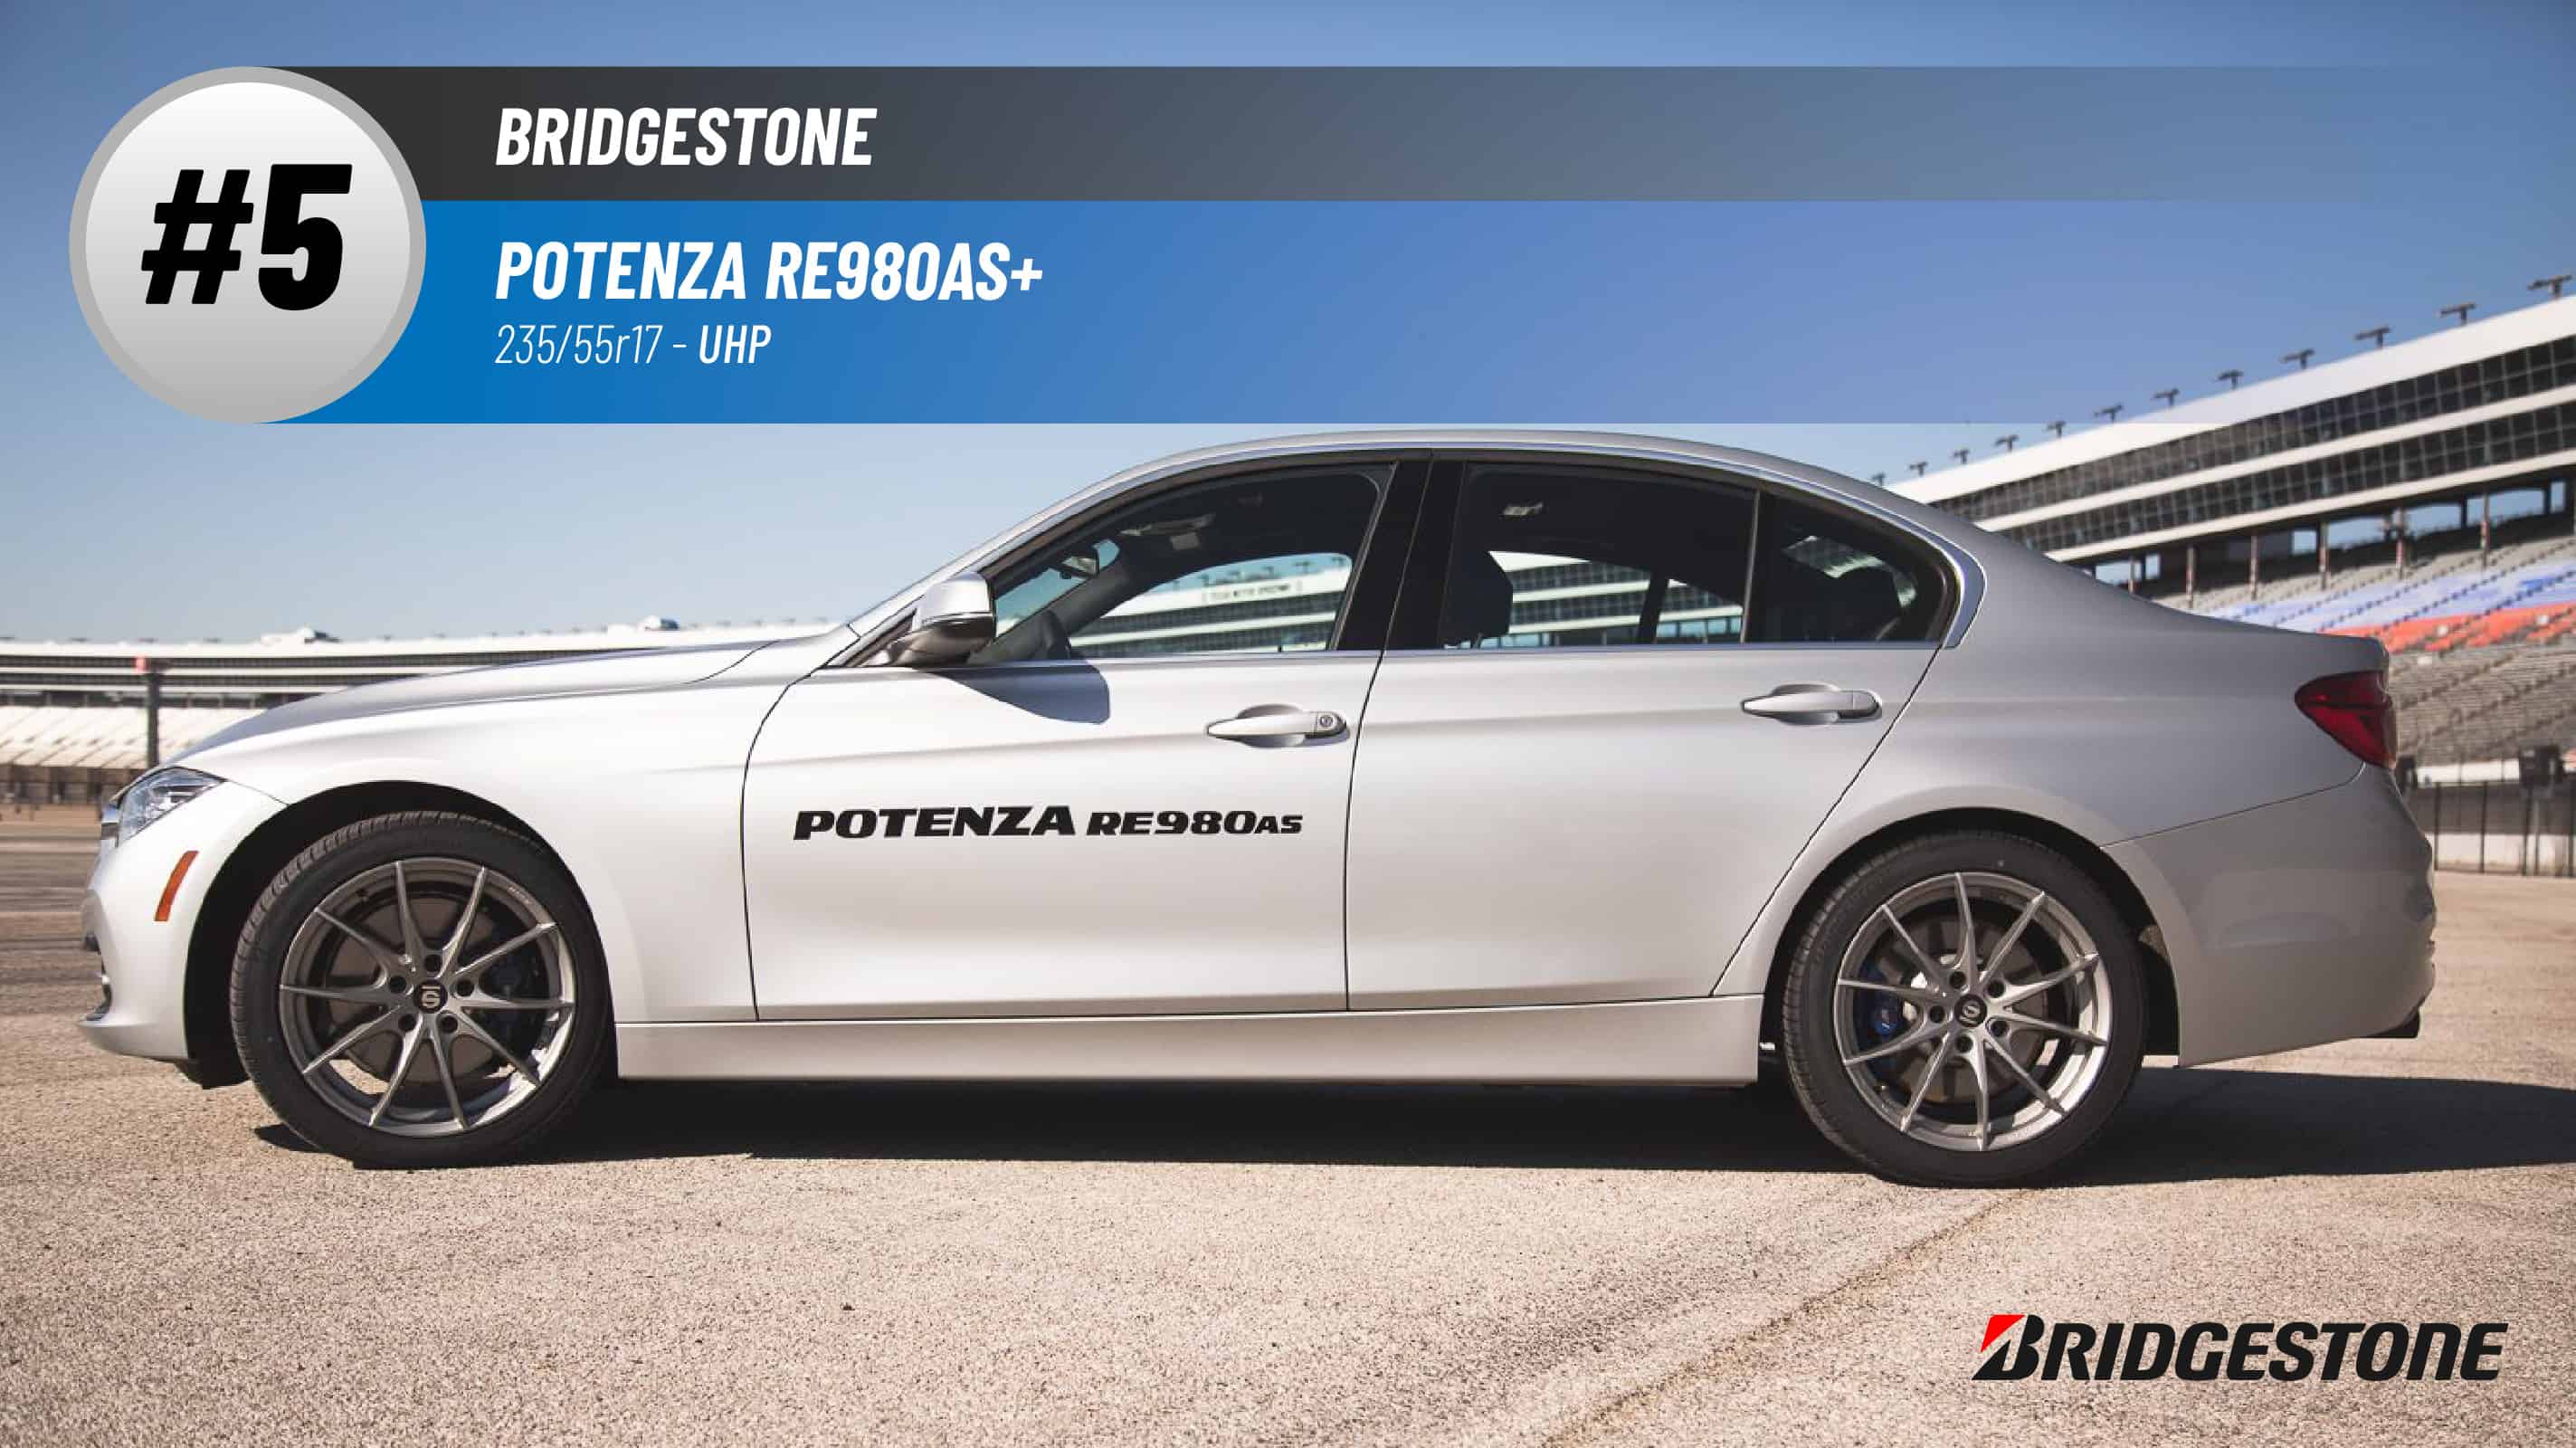 Top #5 UHP Tires: Bridgestone Potenza RE980AS+ 235/55r17